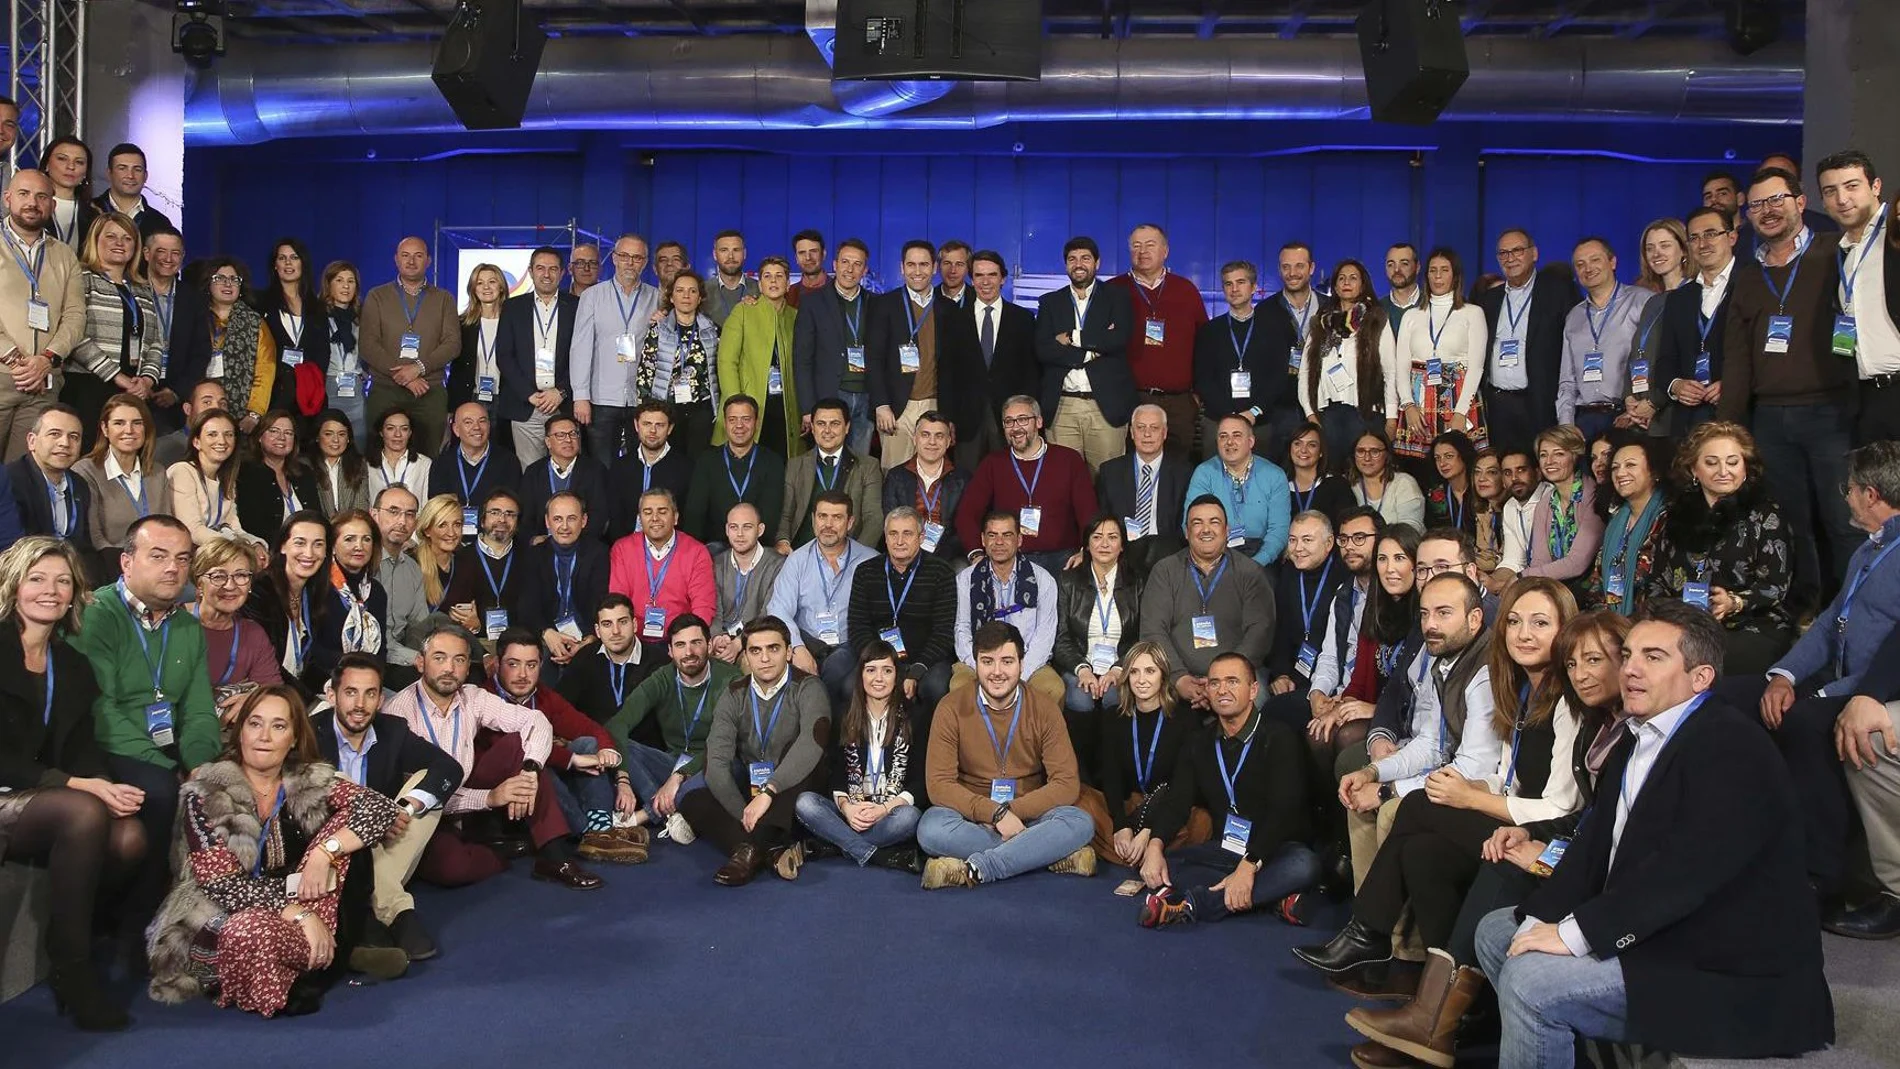 La delegación murciana en la convención nacional la formaron 120 miembros. LA RAZÓN